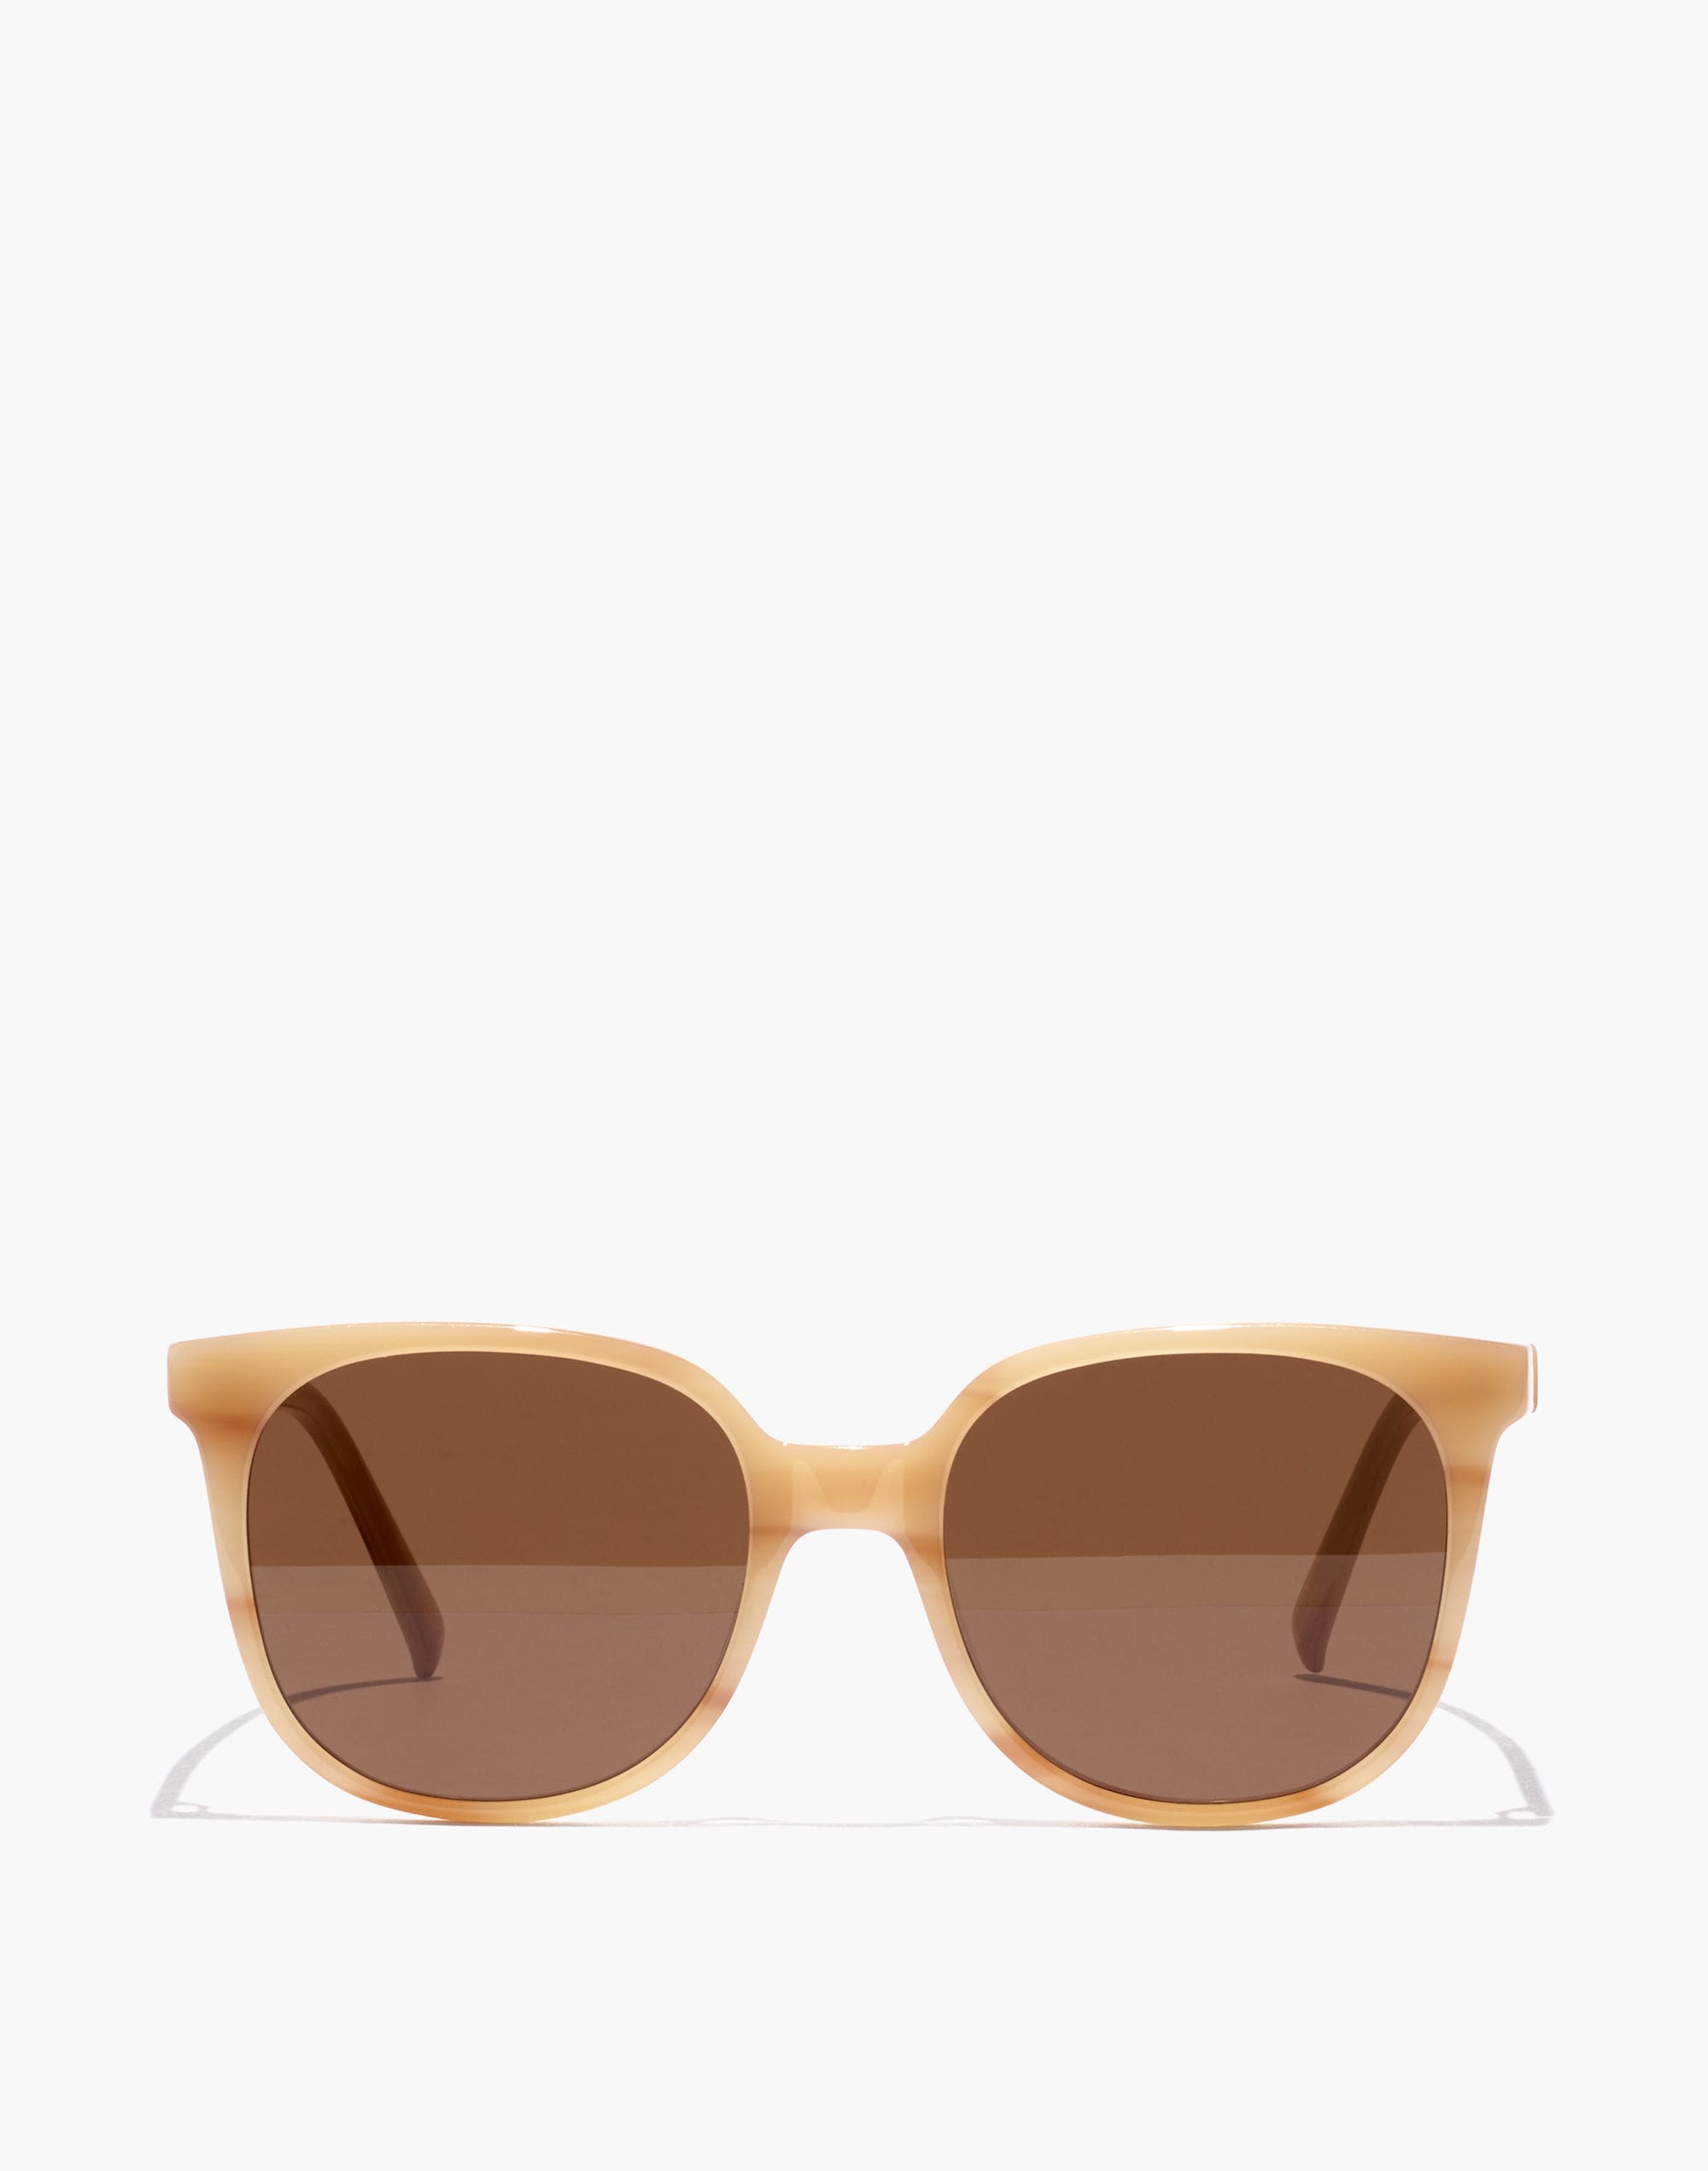 Holwood Sunglasses